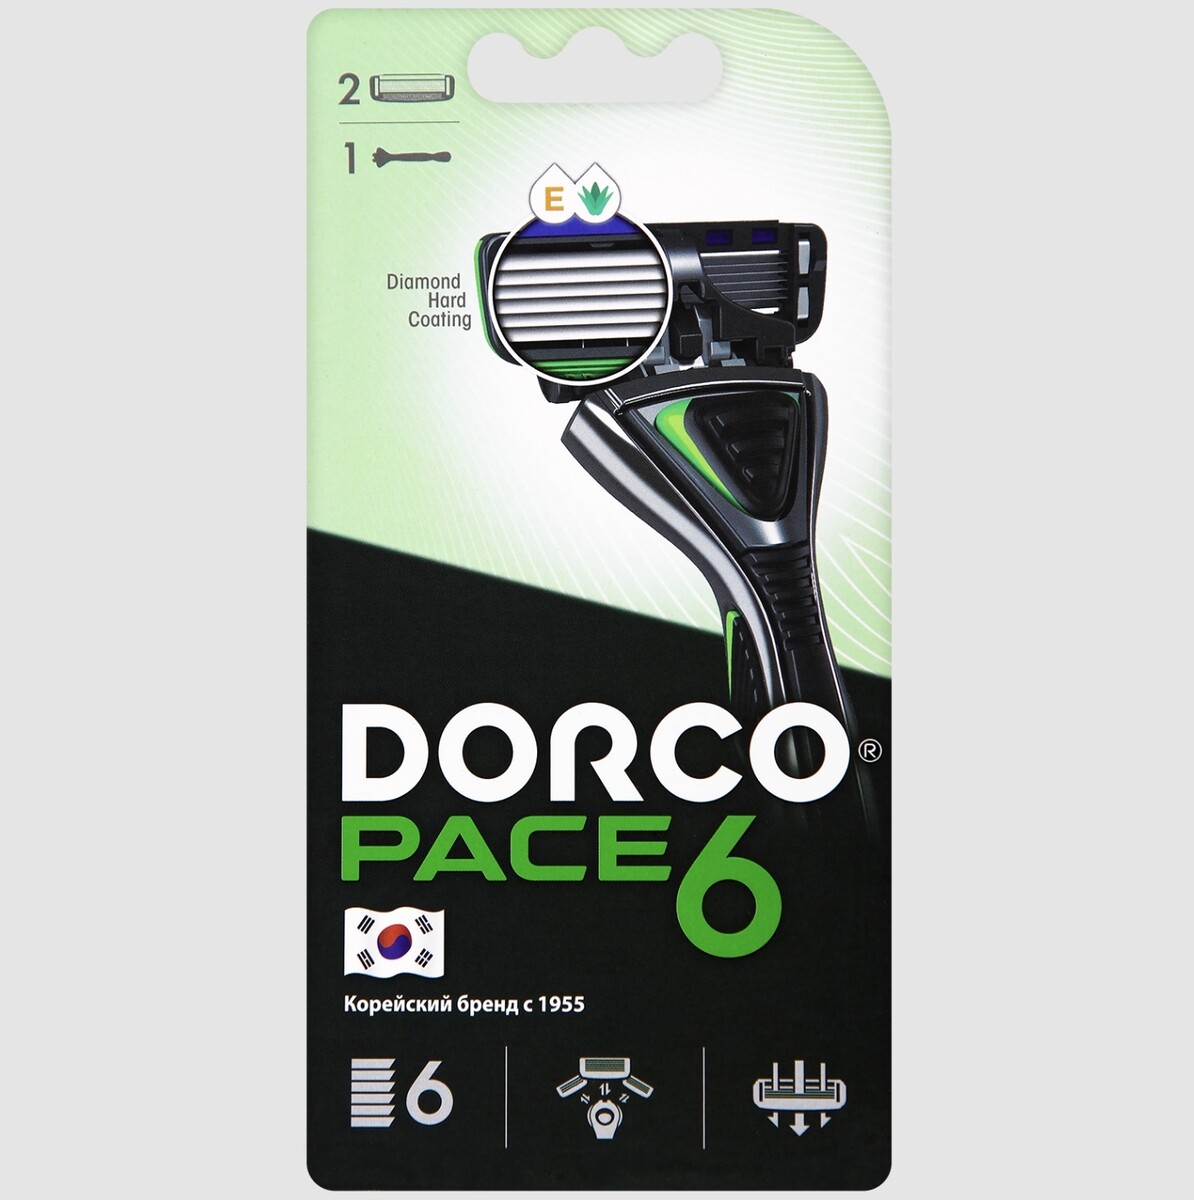 Dorco pace6 (станок+2's) система с 6лезвиями (ю.корея) бритвенный станок luazon 3 лезвия увлажняющая полоска 3 сменные кассеты